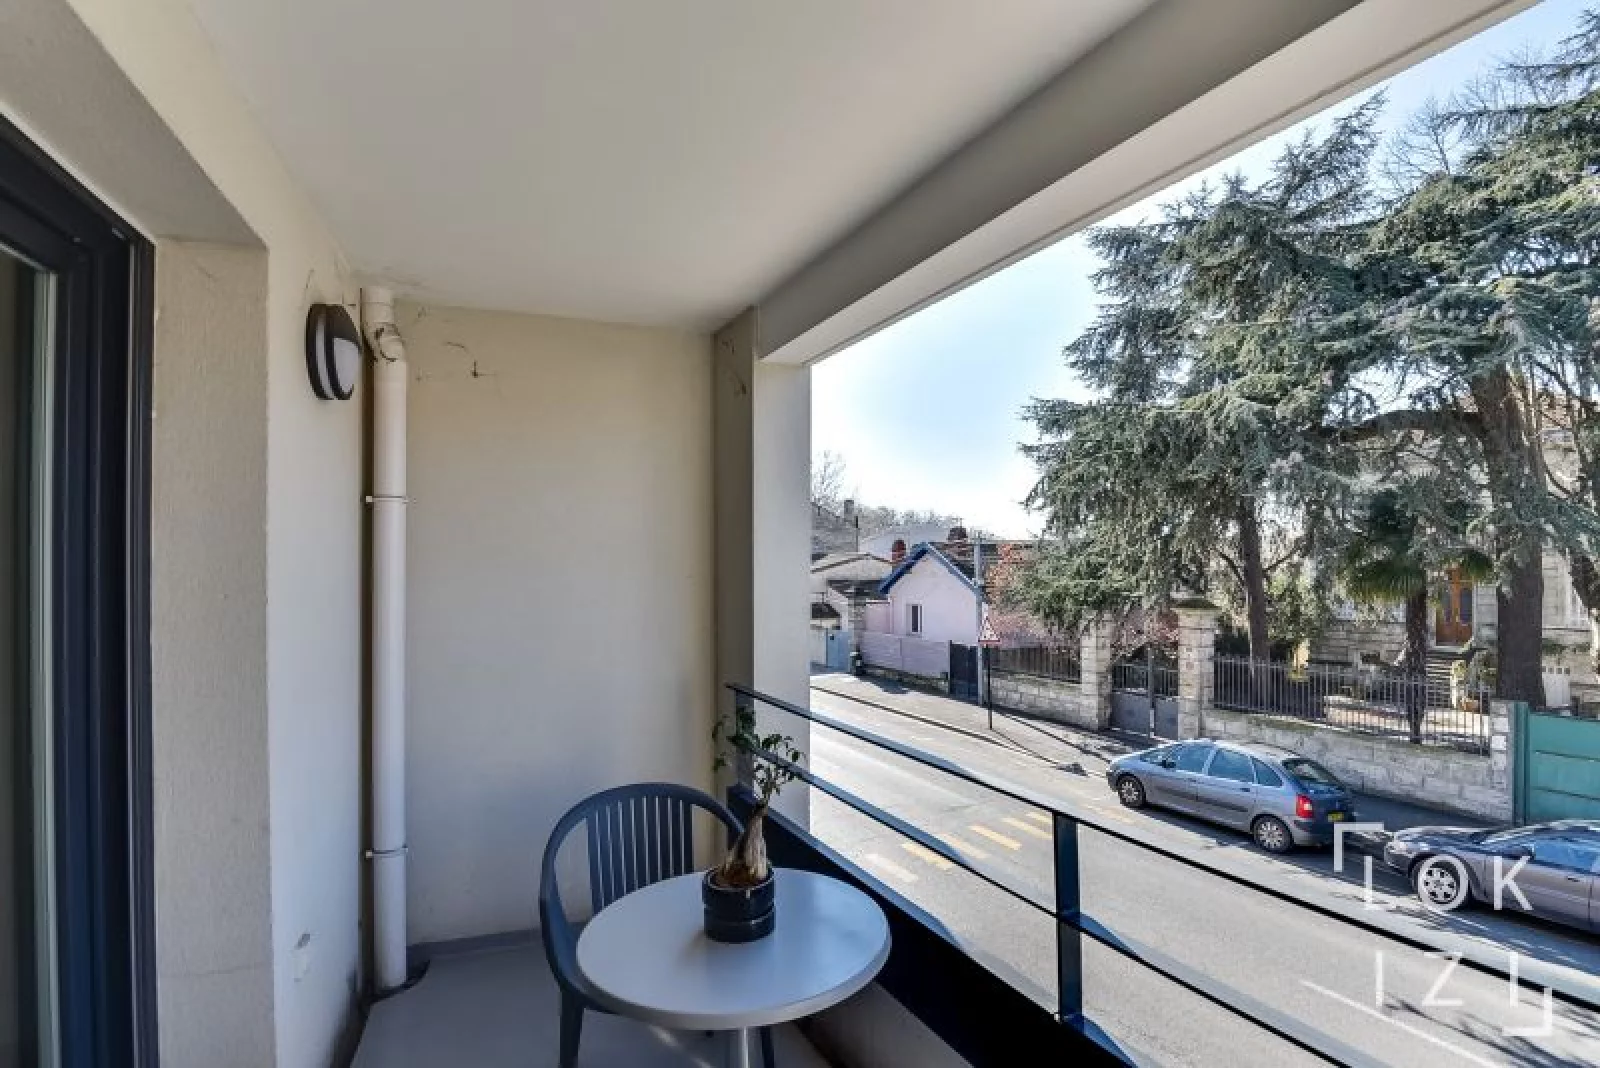 Location appartement meublé 2 pièces 42m² (Bordeaux - Bacalan)